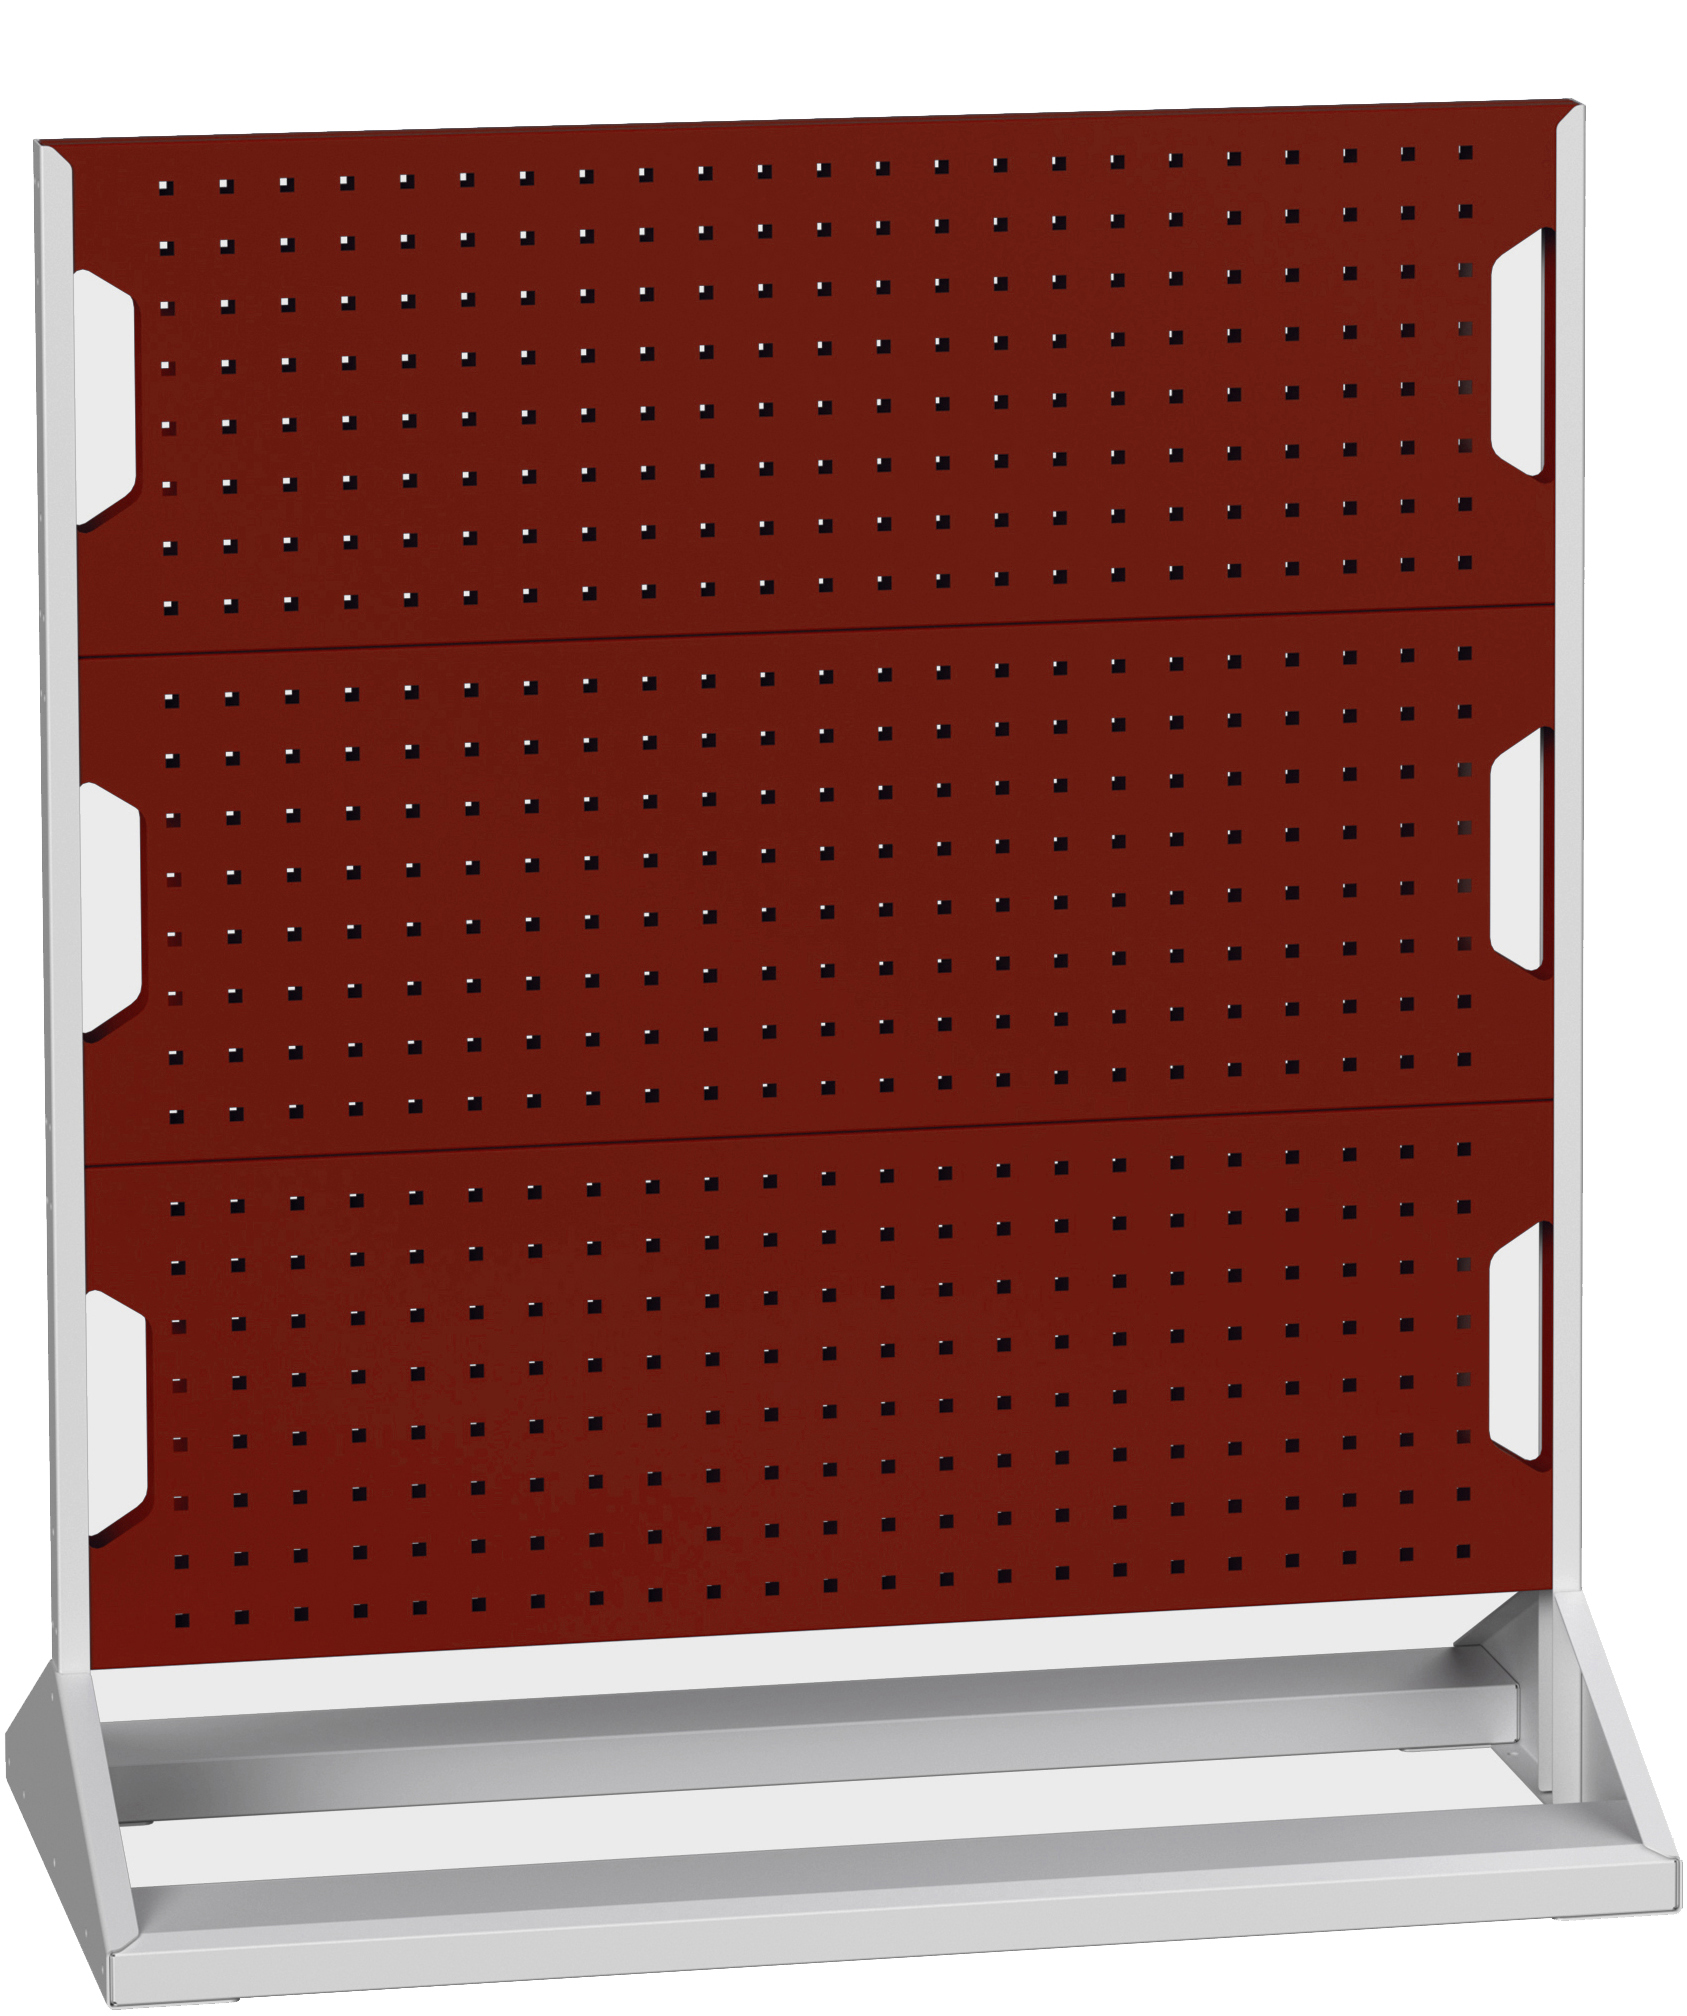 Bott Perfo Panel Rack (Double Sided) - 16917100.24V